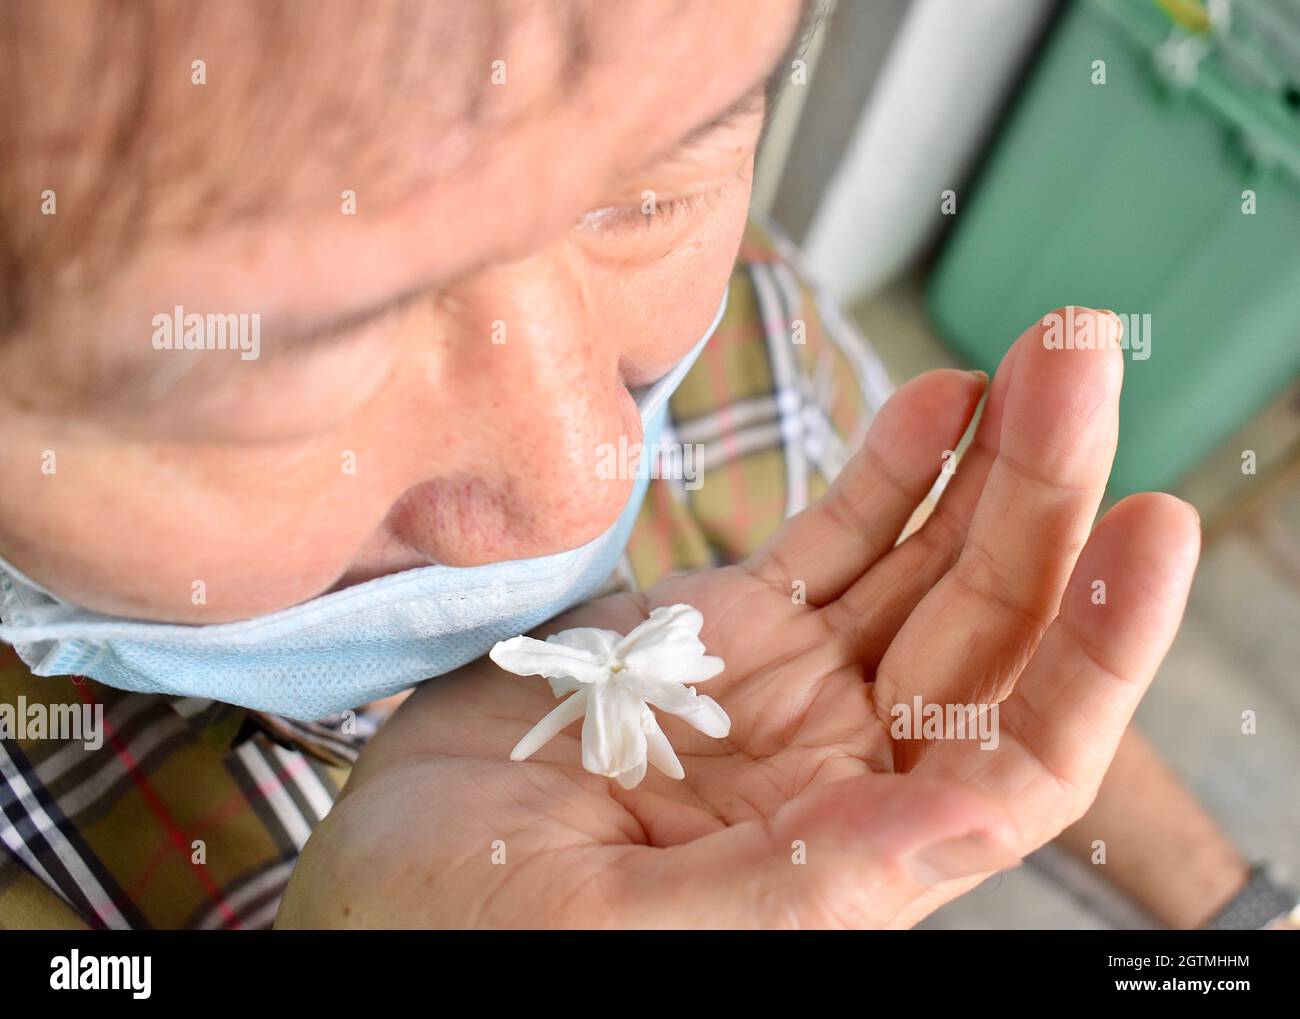 Sud-est asiatico, cinese e Myanmar vecchio con influenza fredda ottiene perdita di odore chiamato anosmia. Ha odore di fiore di gelsomino Foto Stock